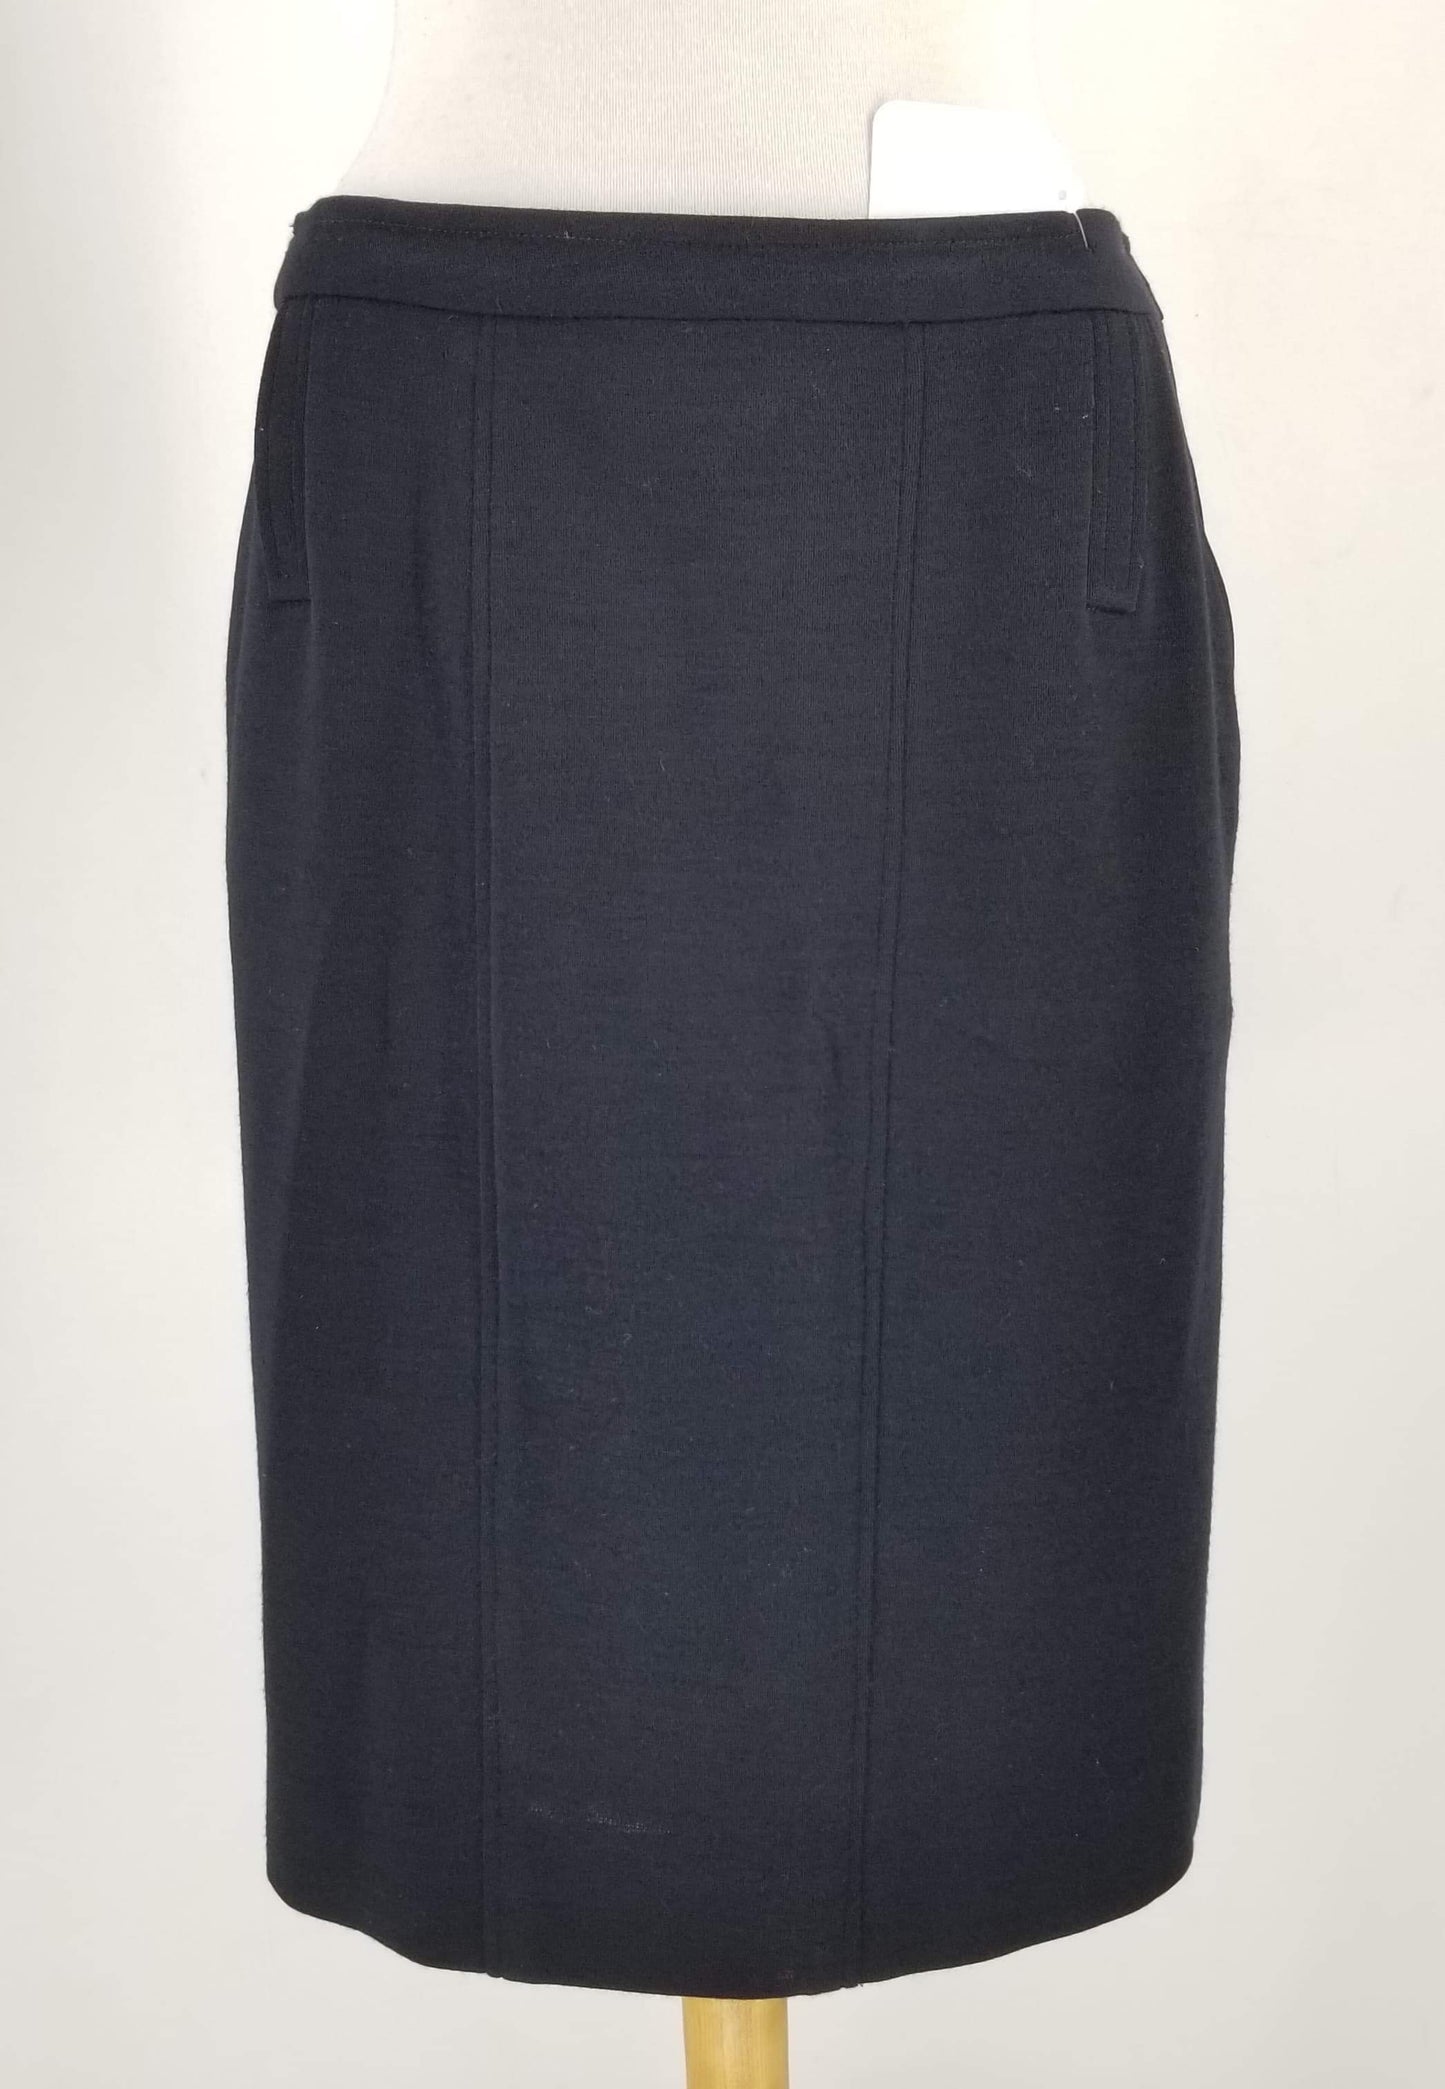 Authentic Chanel Vintage Black Wool Skirt Suit Sz 12